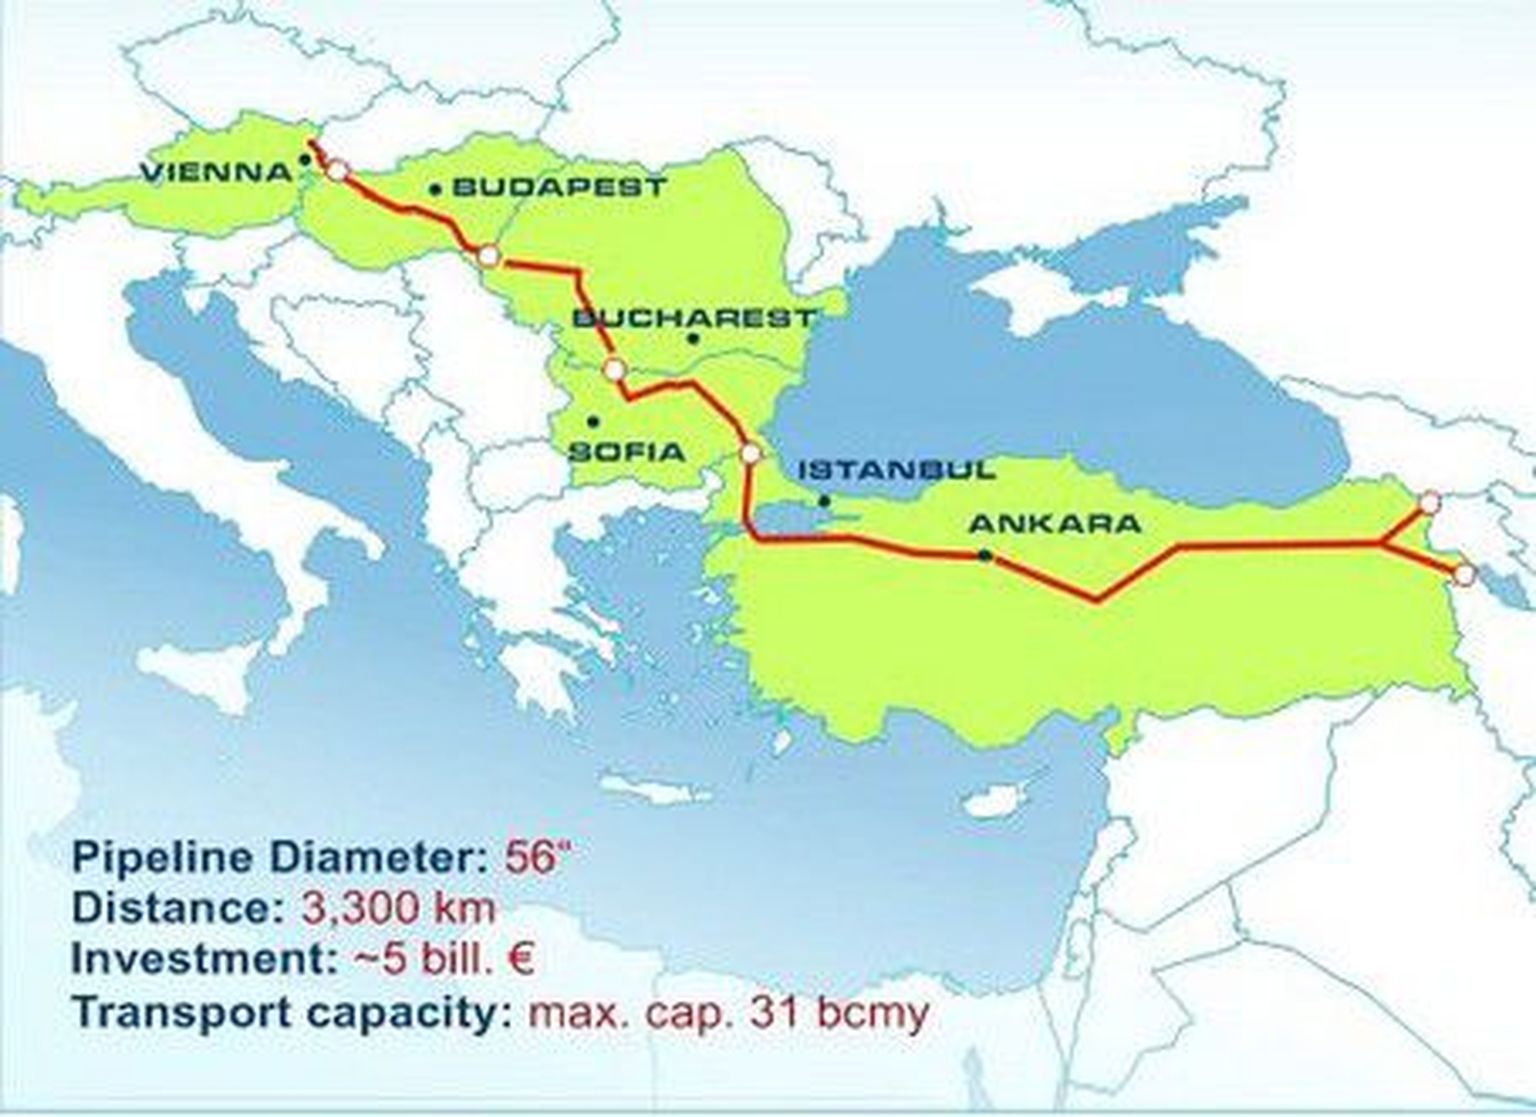 Plaanitav Nabucco gaasijuhe muudaks Kaspia piirkonna suured maagaasivarud Euroopale kättesaadavaks Venemaa vahenduseta.